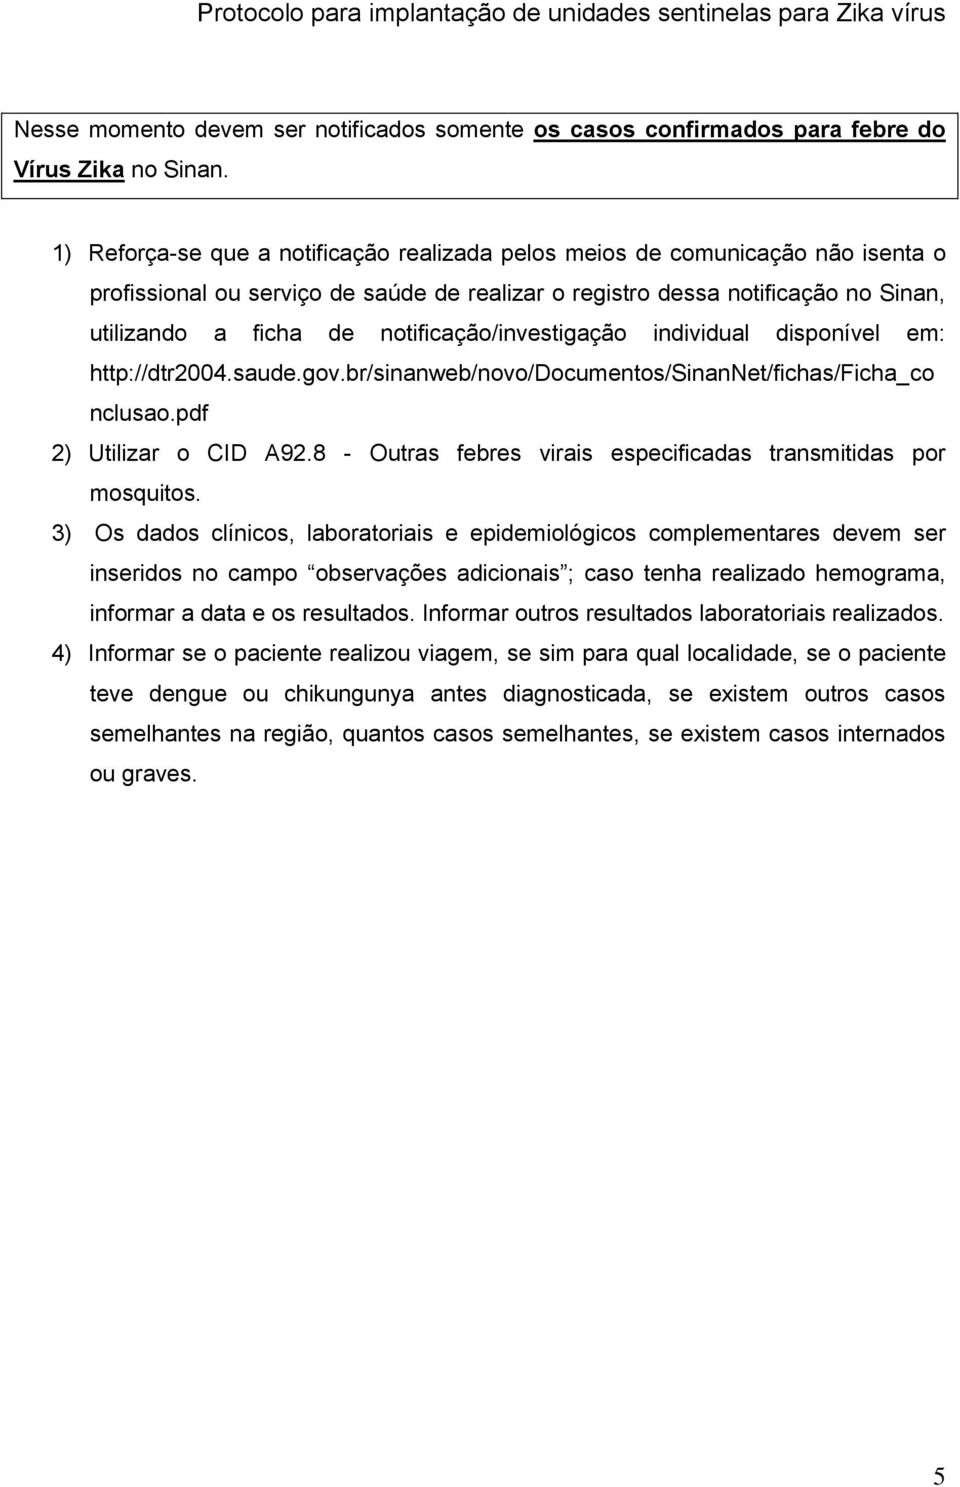 notificação/investigação individual disponível em: http://dtr2004.saude.gov.br/sinanweb/novo/documentos/sinannet/fichas/ficha_co nclusao.pdf 2) Utilizar o CID A92.